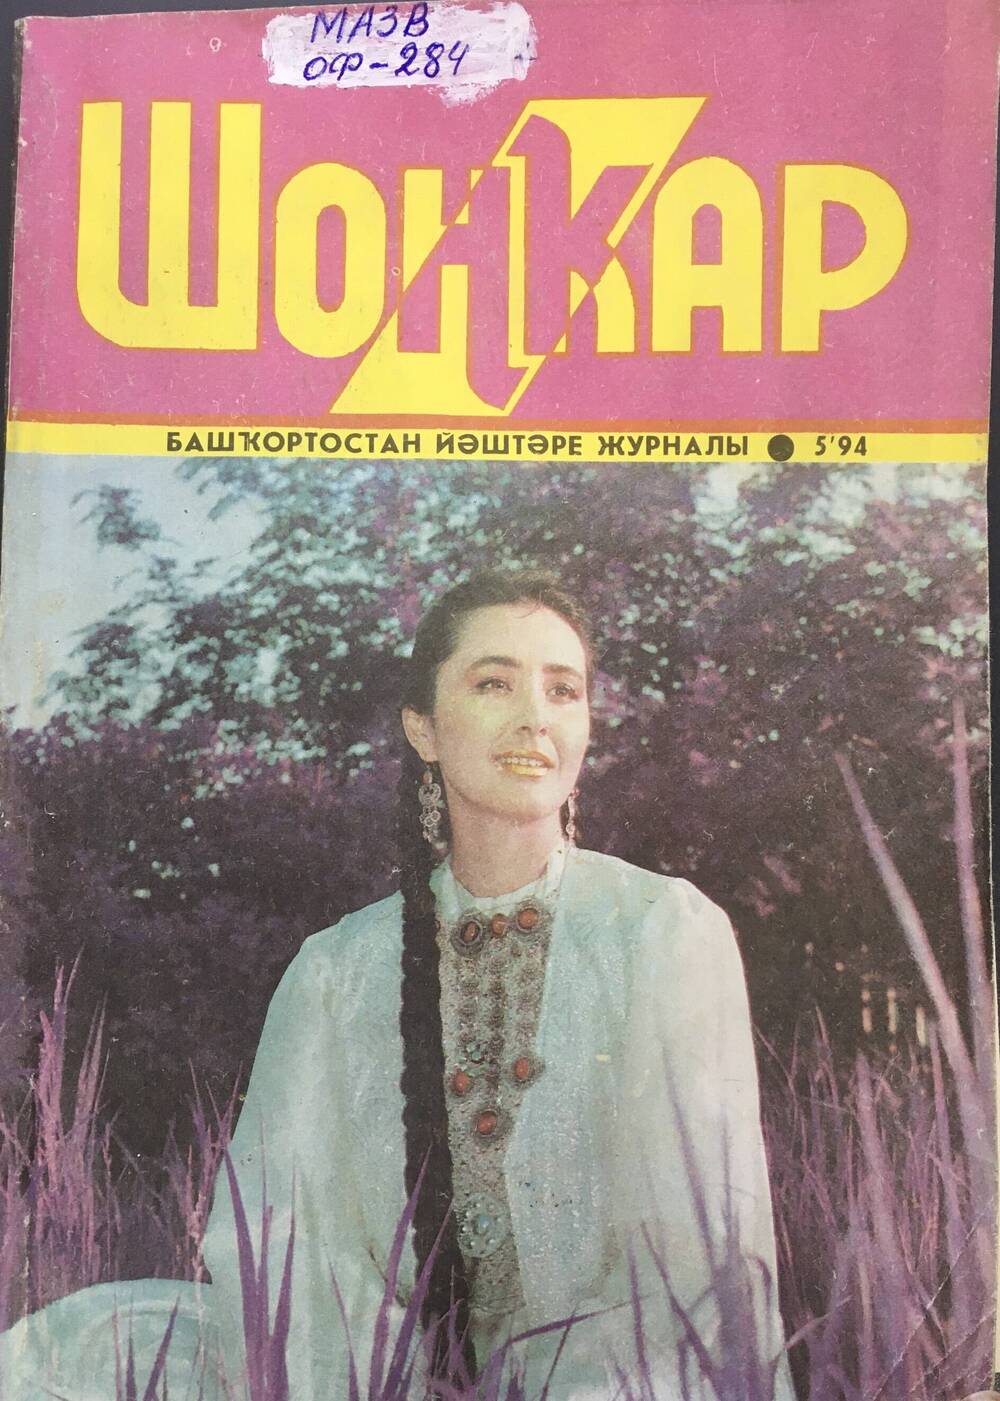 Журнал Шонкар № 5-1994 г. Статья Газима  Шафикова Генерал  Ишбулатов